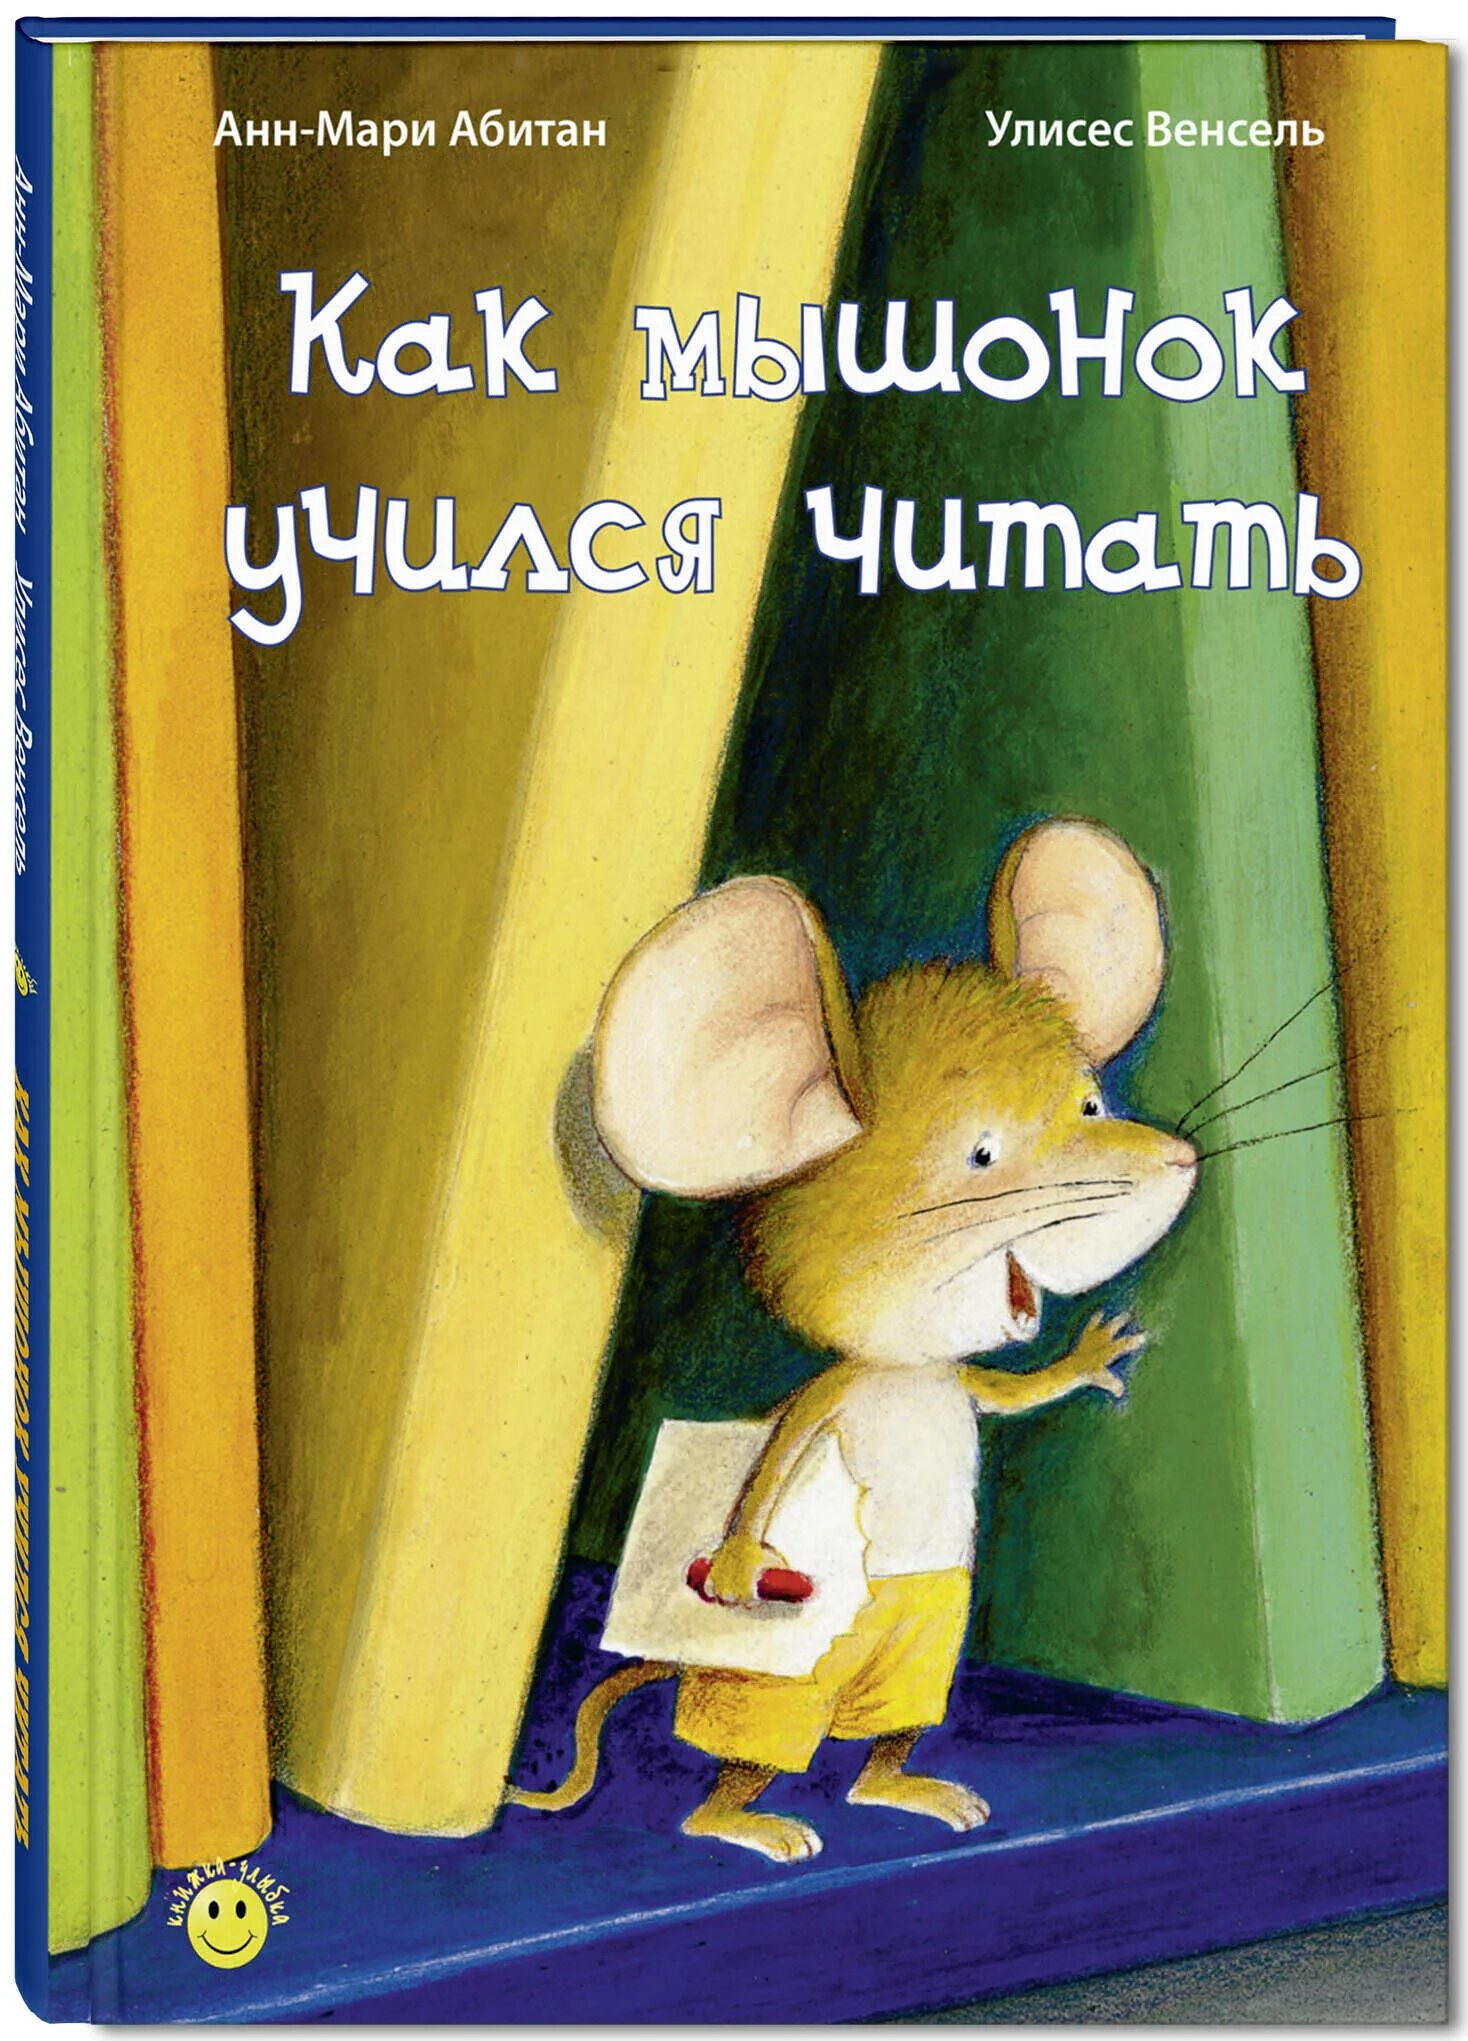 Книга про мышь. Мышка с книгой. Книги про мышонка для детей. Мышь с книжкой. Книга детская про мышку.